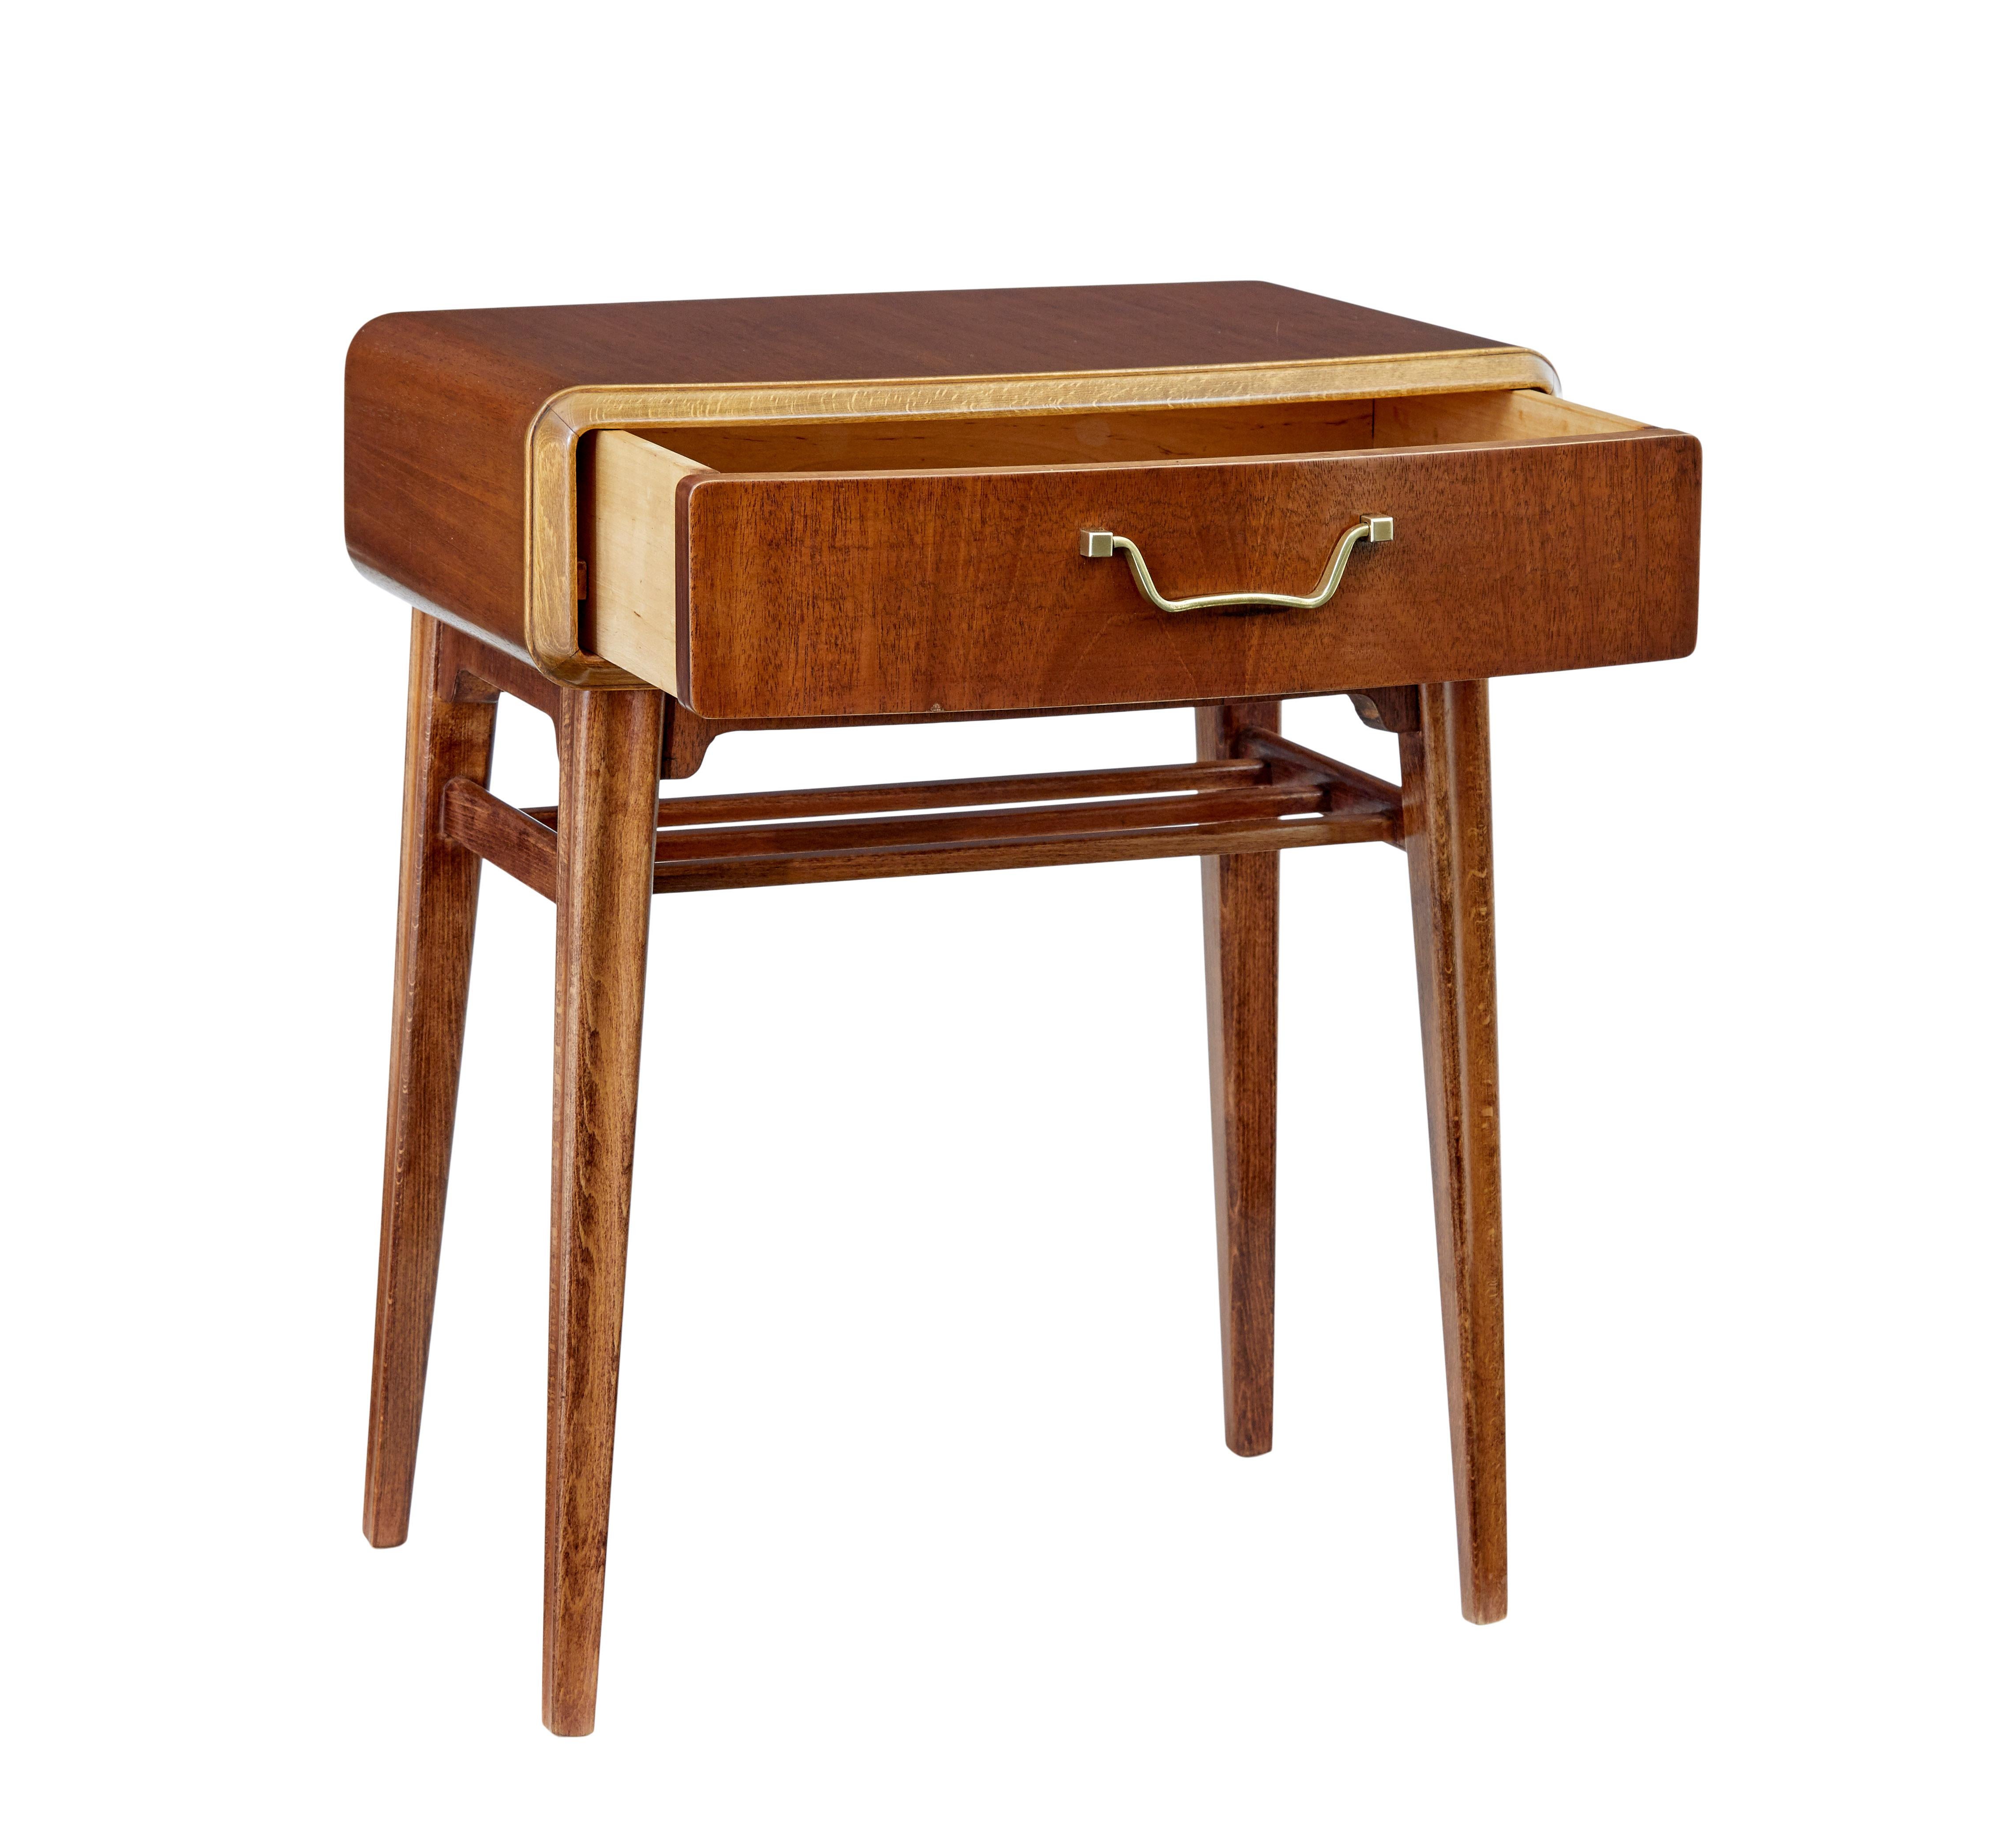 Mahagoni-Nachttisch von Bodafors aus der Mitte des 20. Jahrhunderts, um 1950.

Entworfen vom schwedischen Designer Axel Larsson für das schwedische Unternehmen Bodafors, mit Herstellerlabel auf der Innenseite der Schublade.

Fließende Linien mit